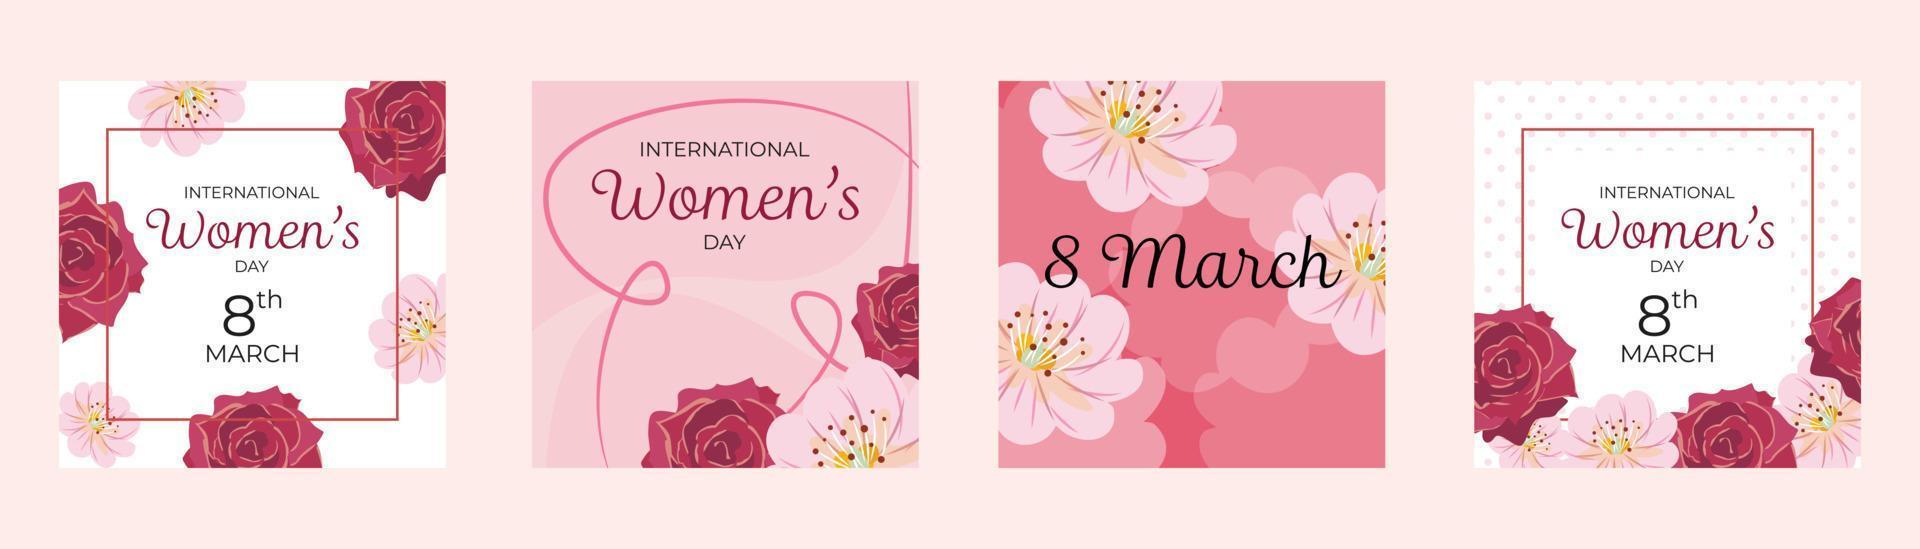 colección de floral plantillas para internacional De las mujeres día vector